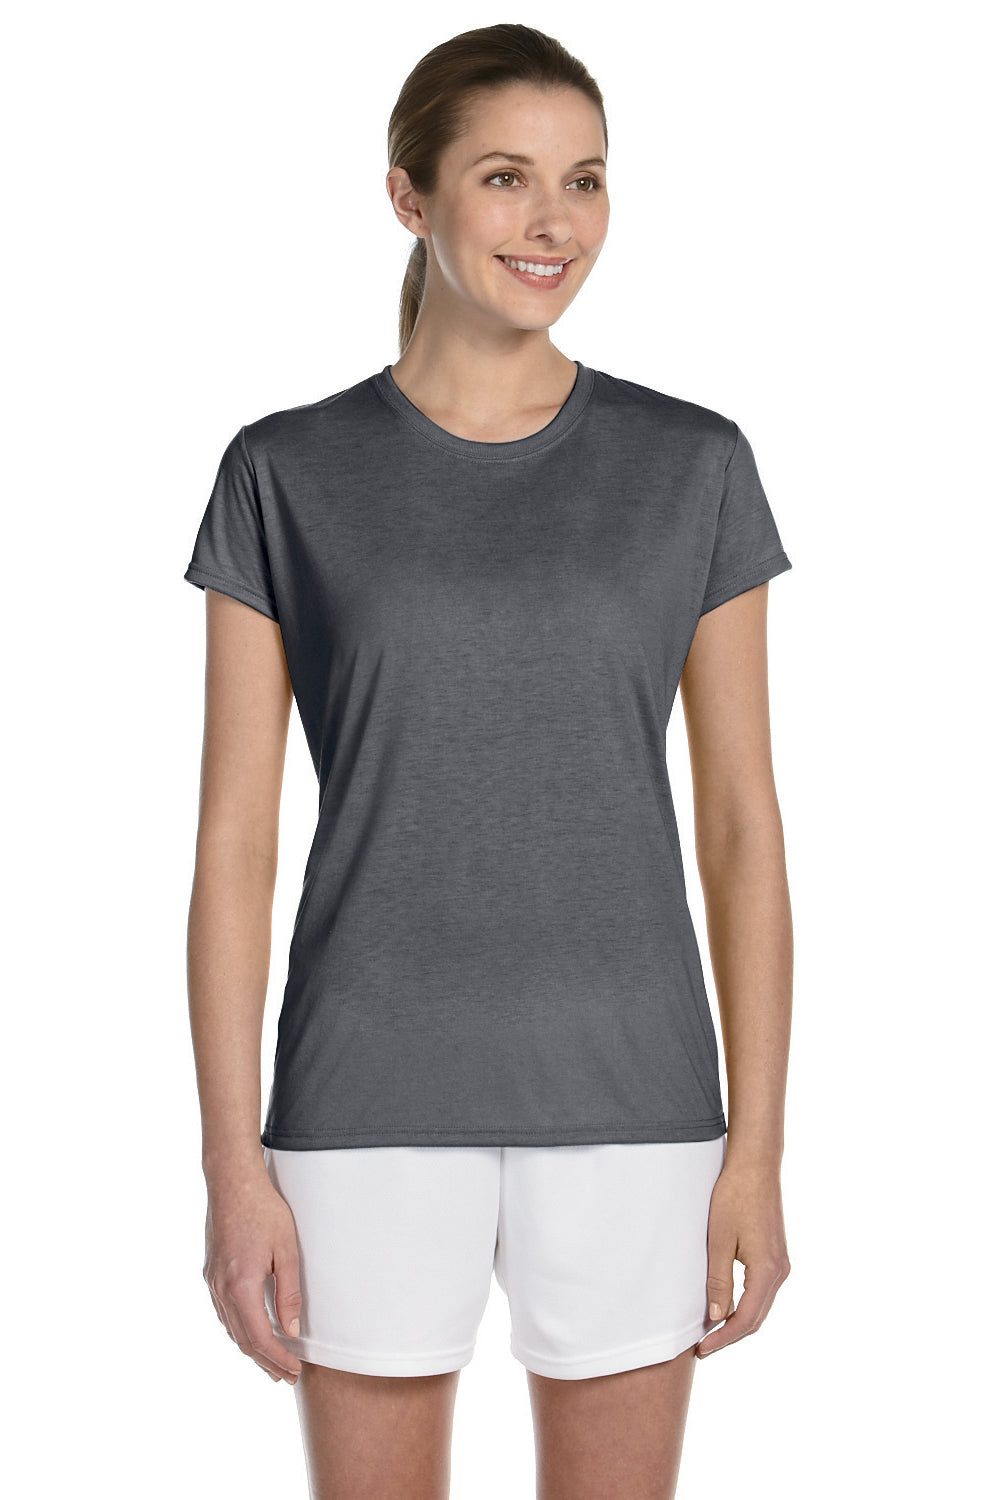 Gildan G420L Womens Performance Jersey Moisture Wicking Short Sleeve Crewneck T-Shirt Charcoal Grey Front